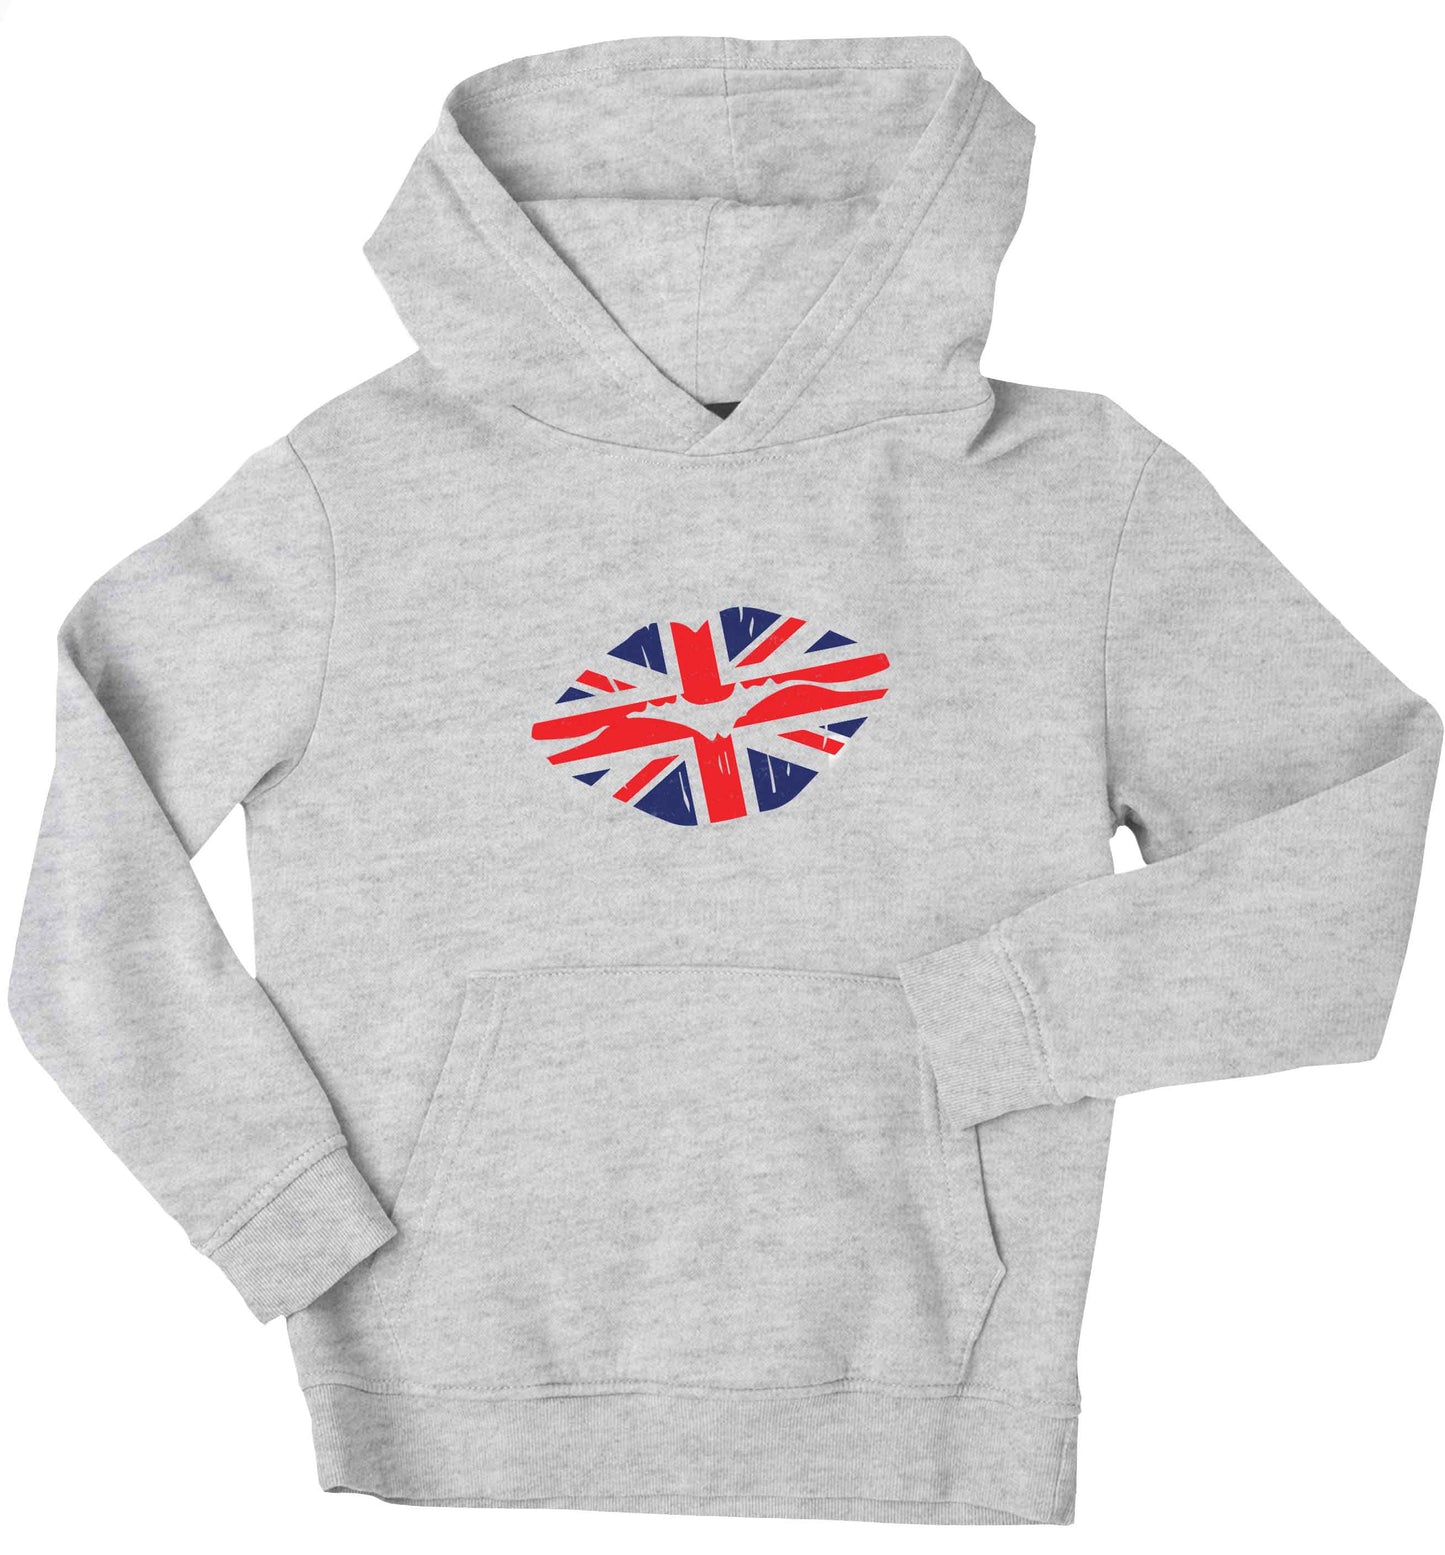 British flag kiss children's grey hoodie 12-13 Years